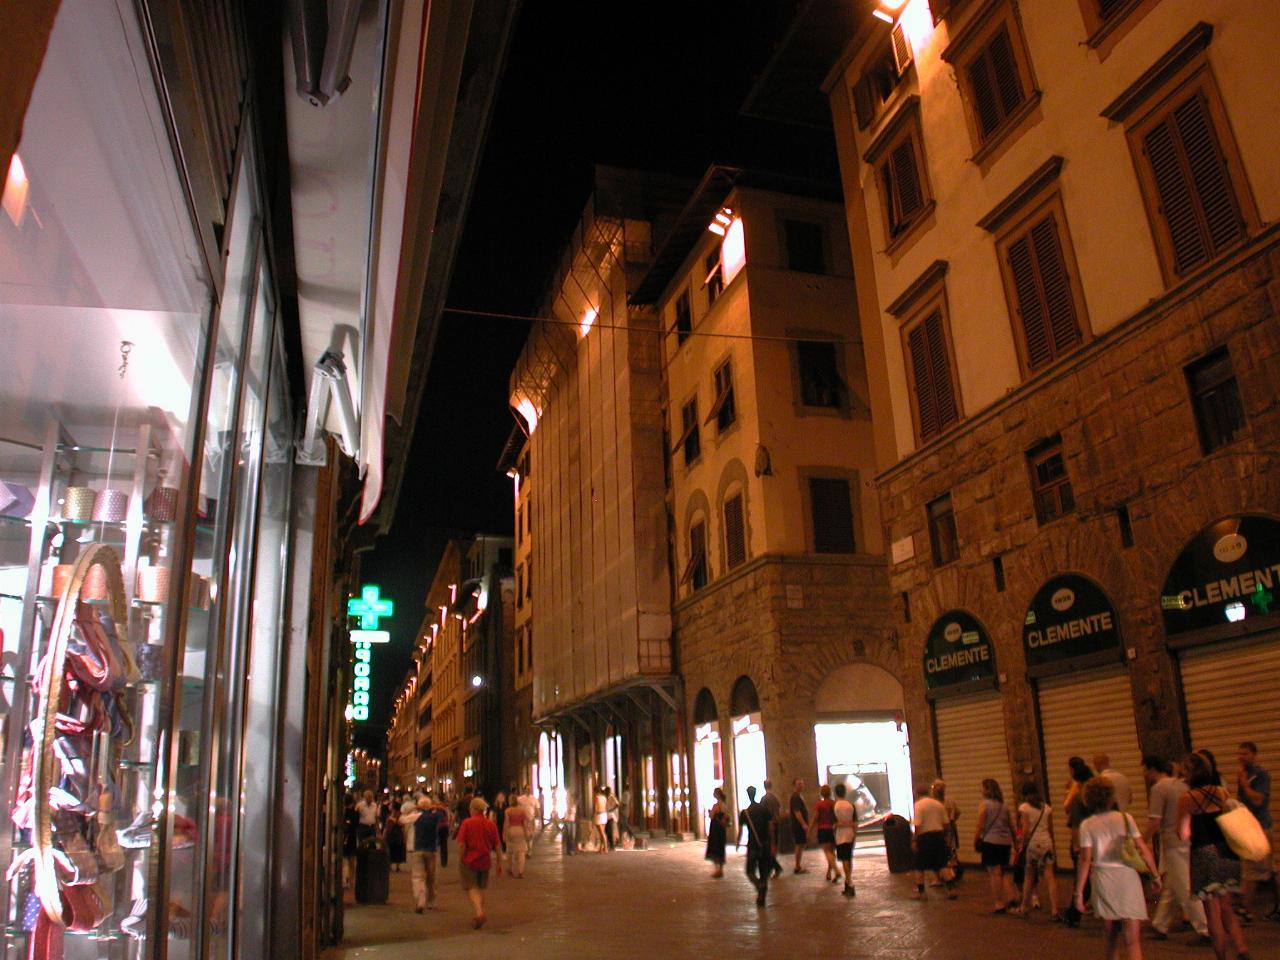 Via Calzaiuoli leading from Piazza della Signoria towards Duomo